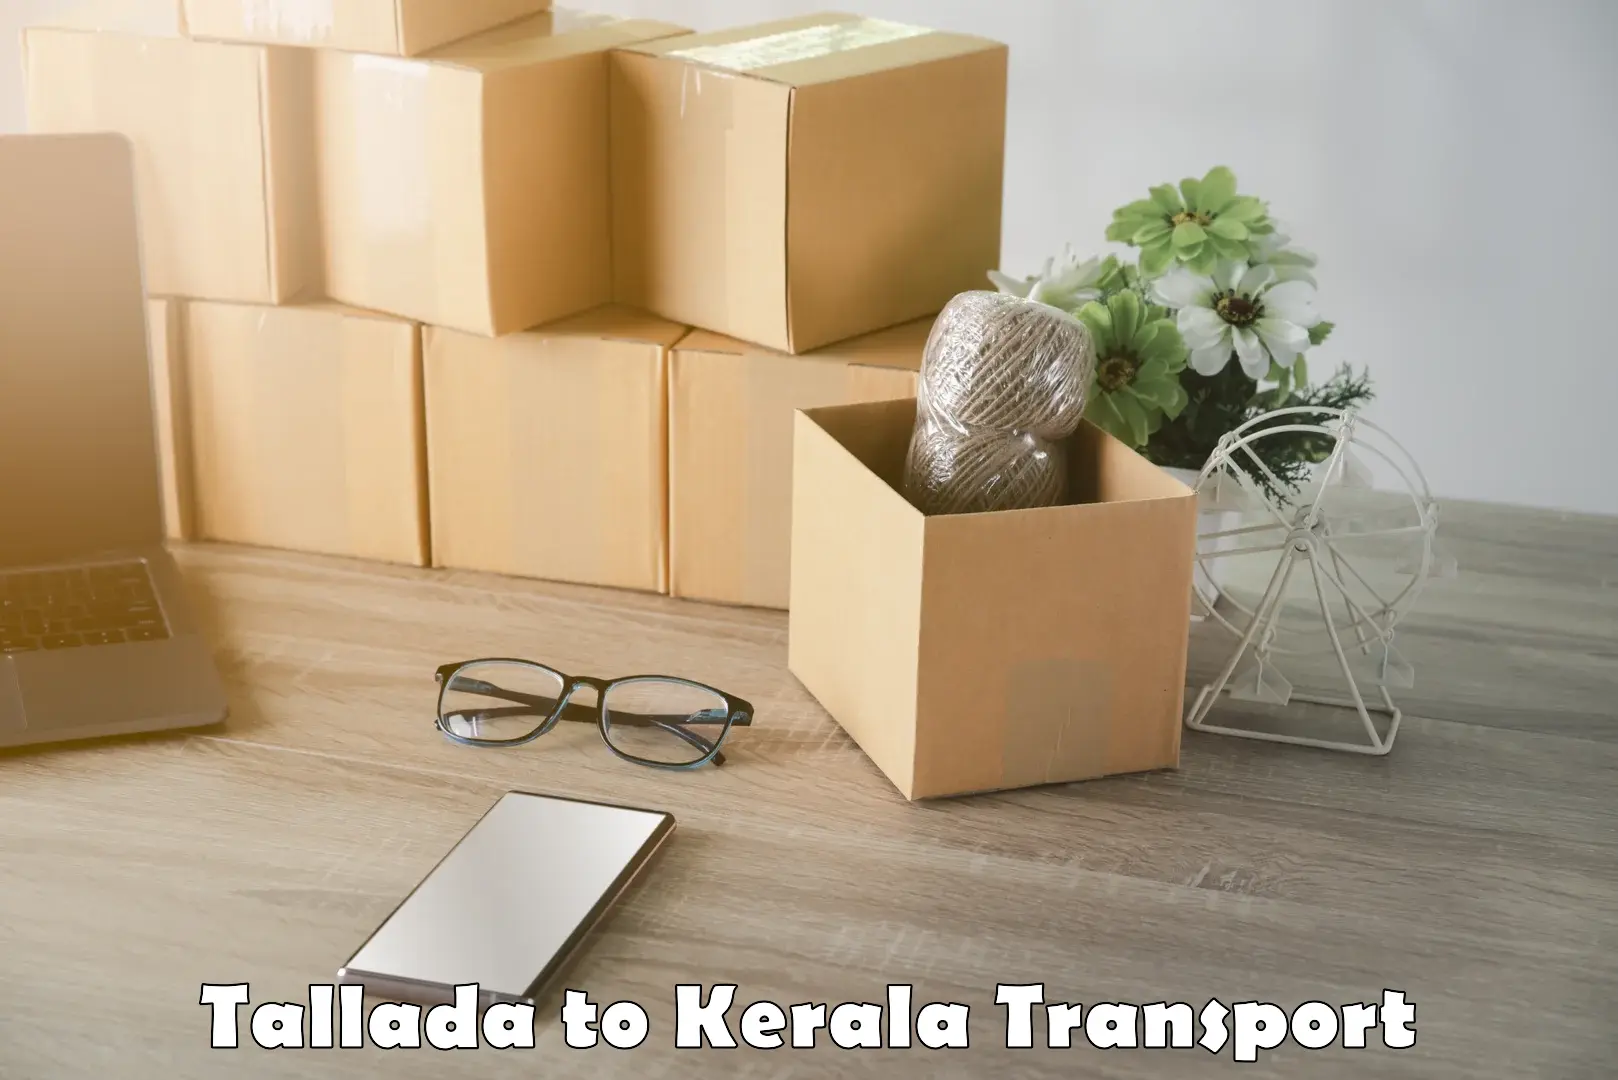 Intercity transport Tallada to Kuttikol